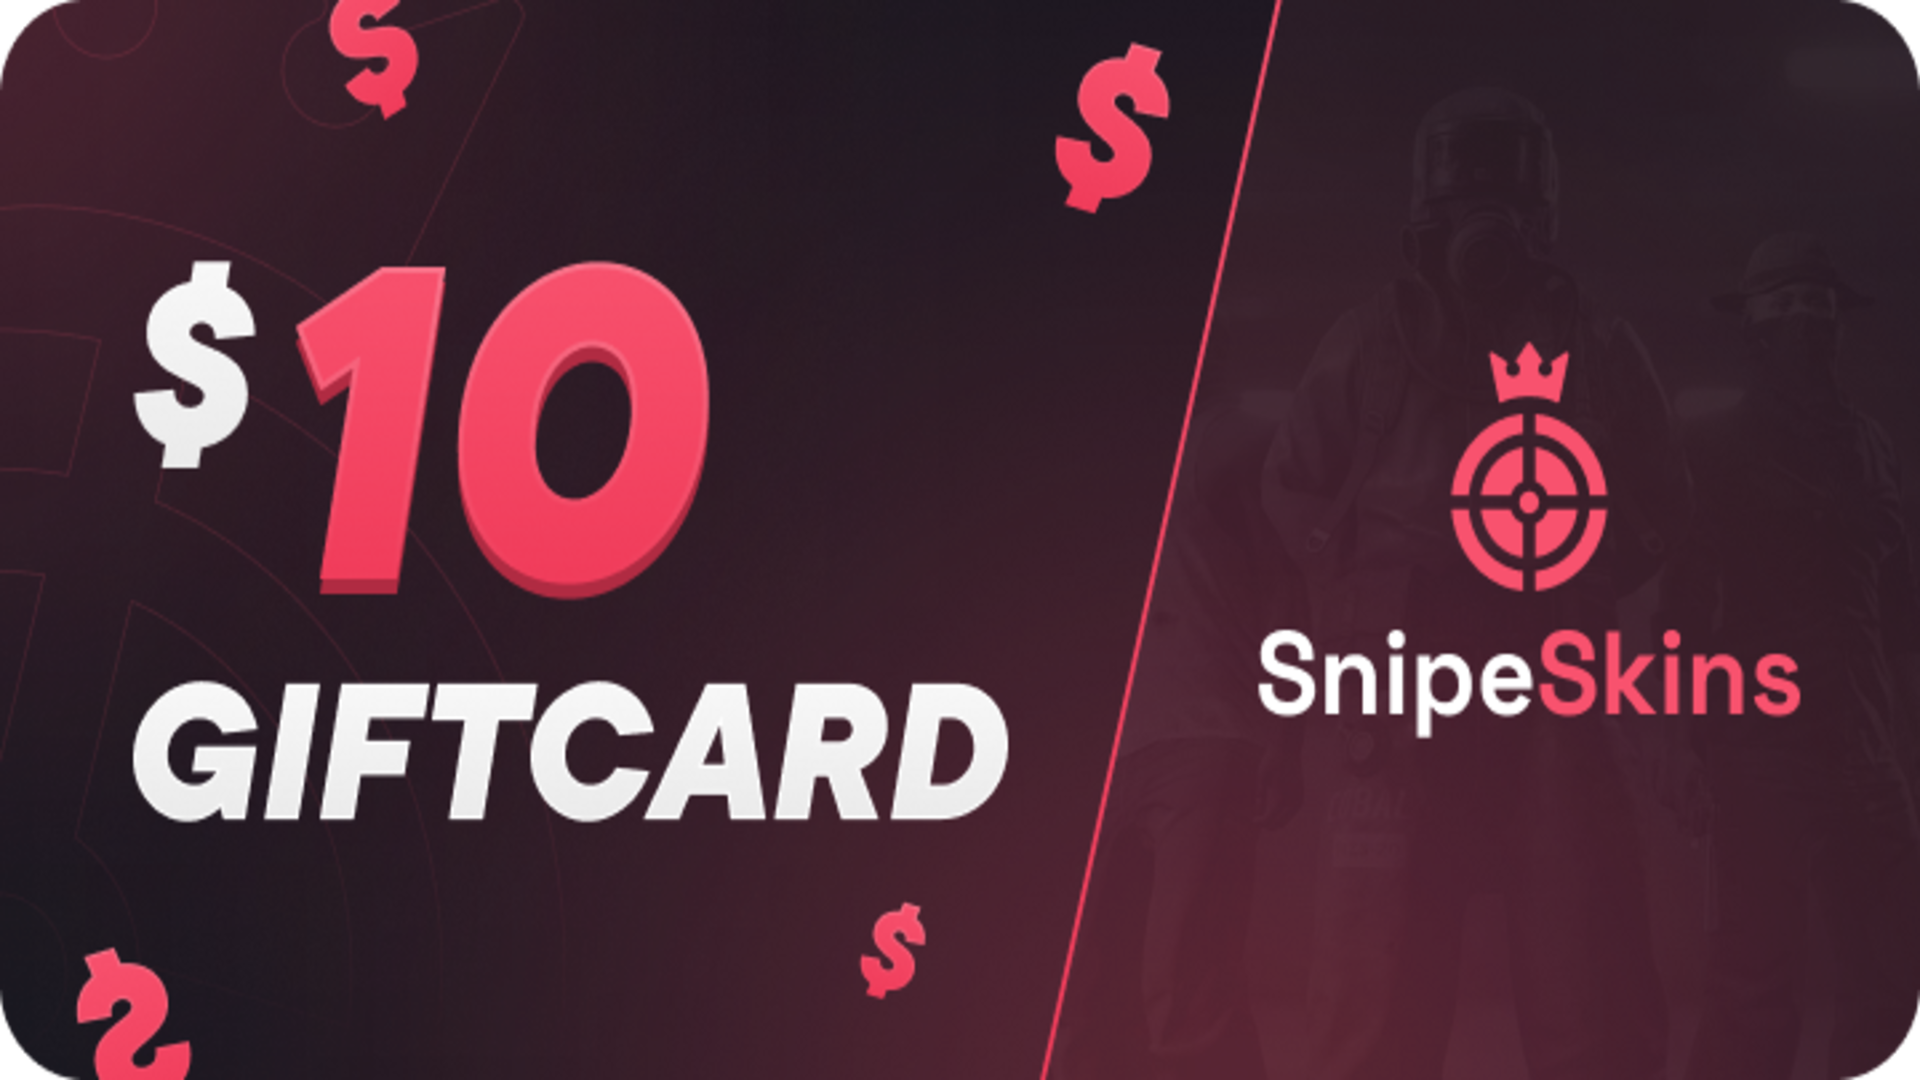 SnipeSkins $10 Gift Card 12.52 USD